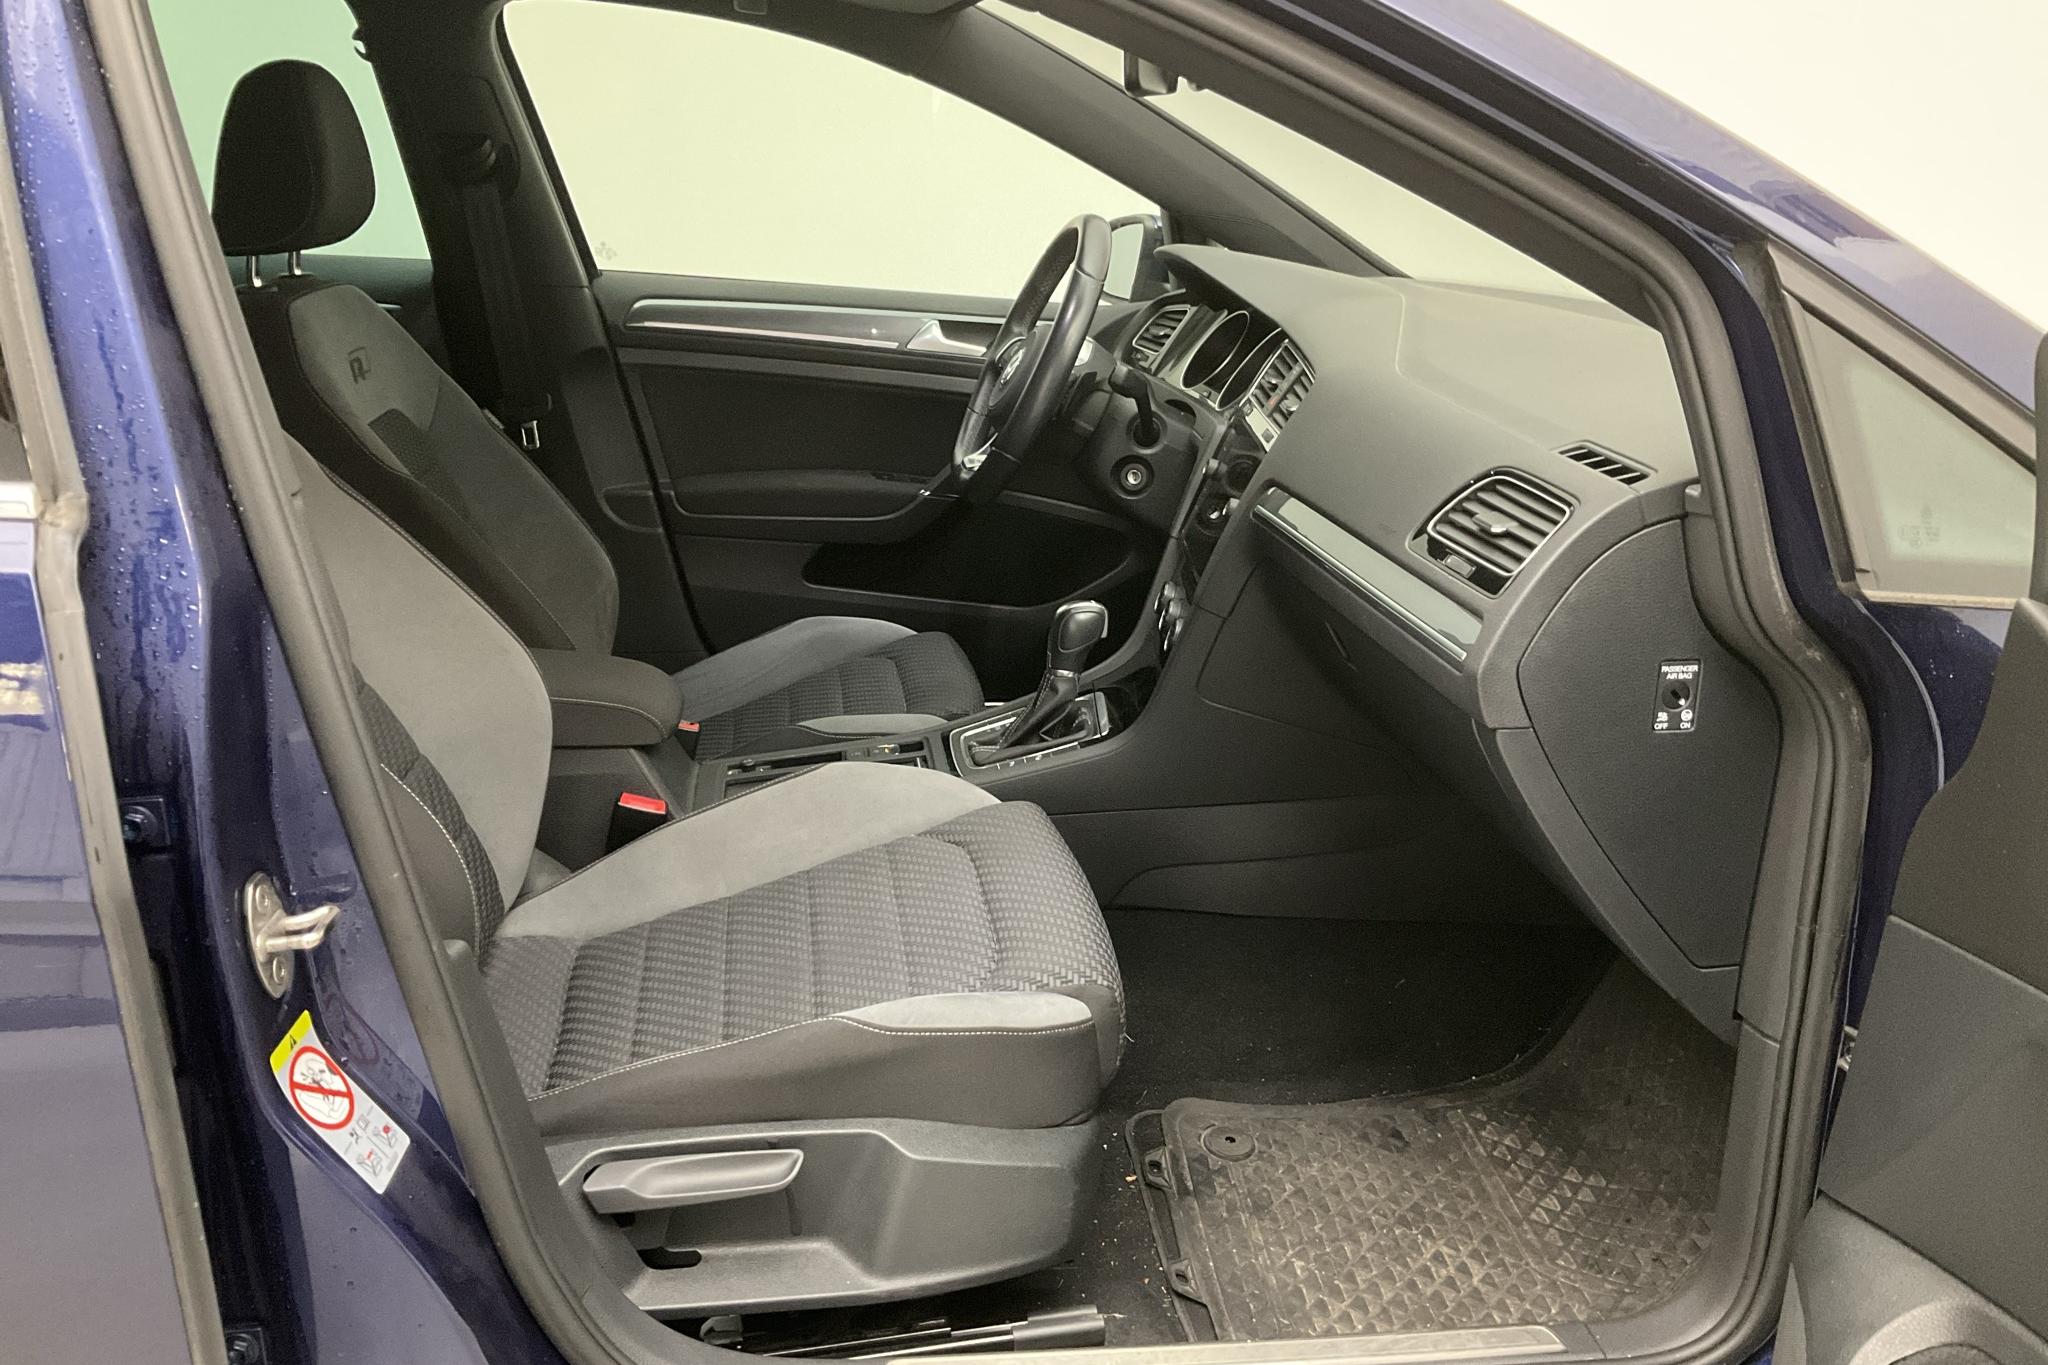 VW Golf VII 1.5 TSI Sportscombi (150hk) - 8 959 mil - Automat - Dark Blue - 2019